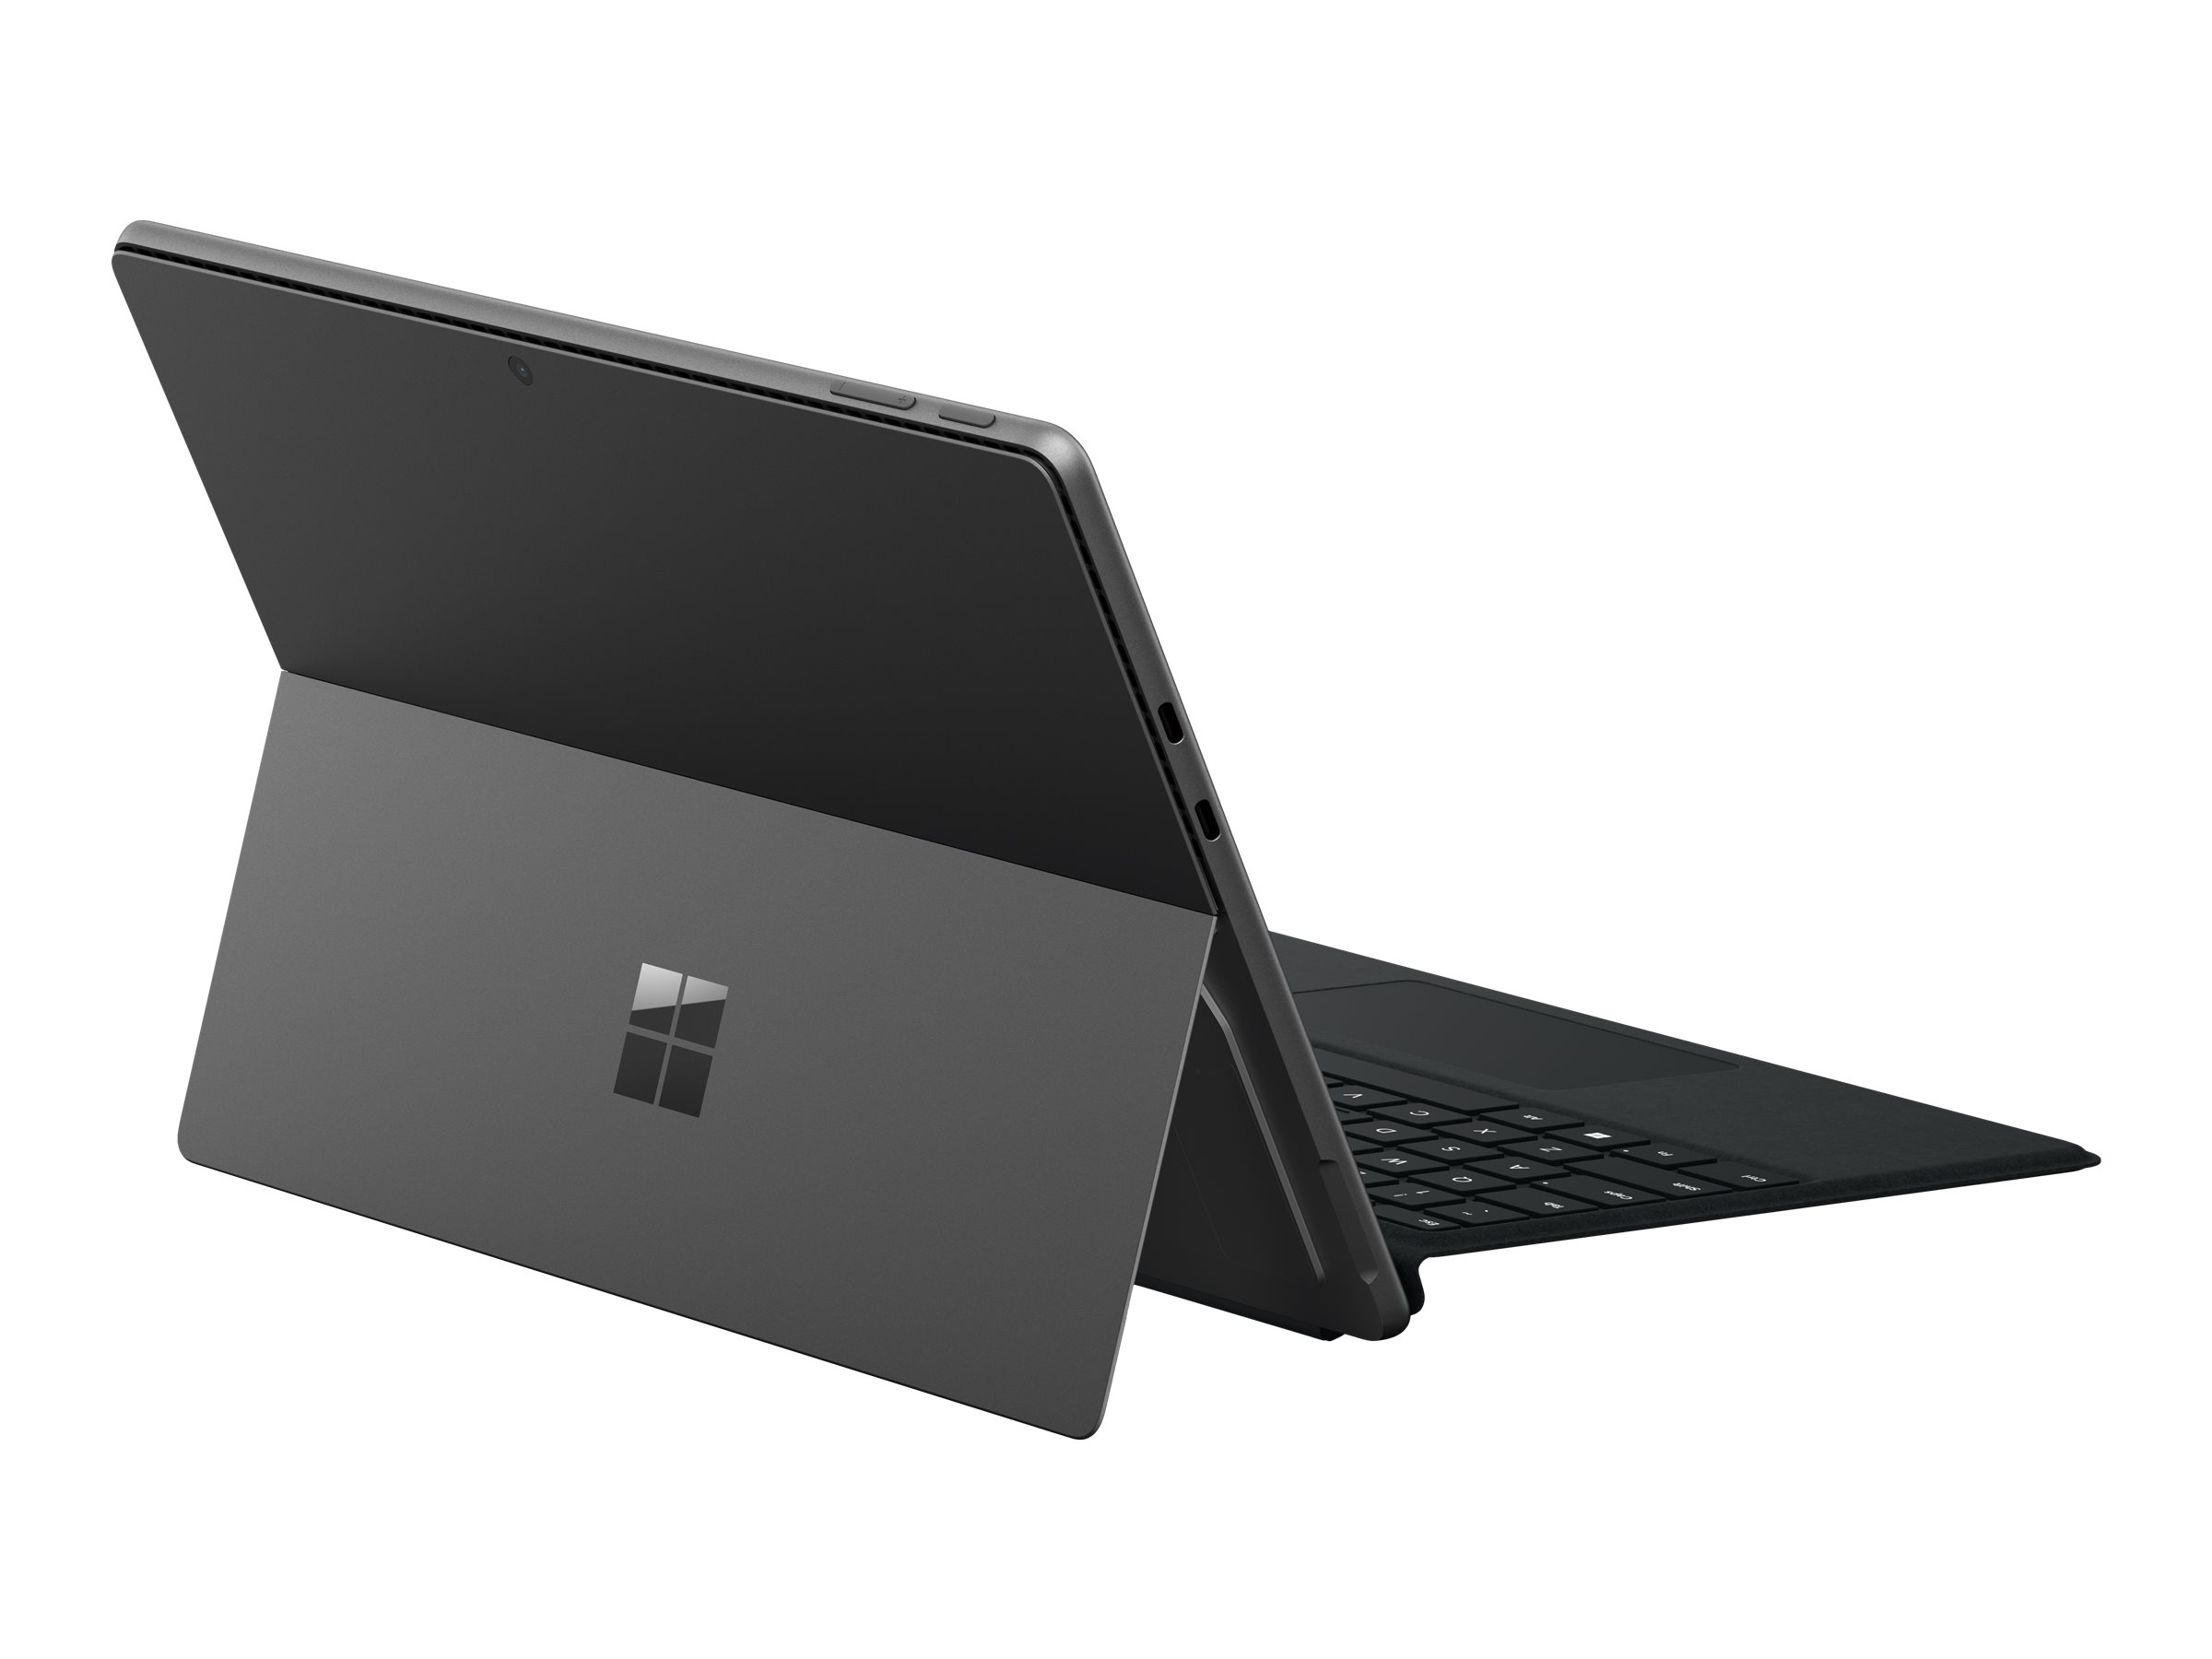 Microsoft Surface Pro 9 for Business - Tablette - Intel Core i7 - 1265U / jusqu'à 4.8 GHz - Evo - Win 10 Pro - Carte graphique Intel Iris Xe - 16 Go RAM - 512 Go SSD - 13" écran tactile 2880 x 1920 @ 120 Hz - Wi-Fi 6E - graphite - S8N-00021 - Ordinateurs portables